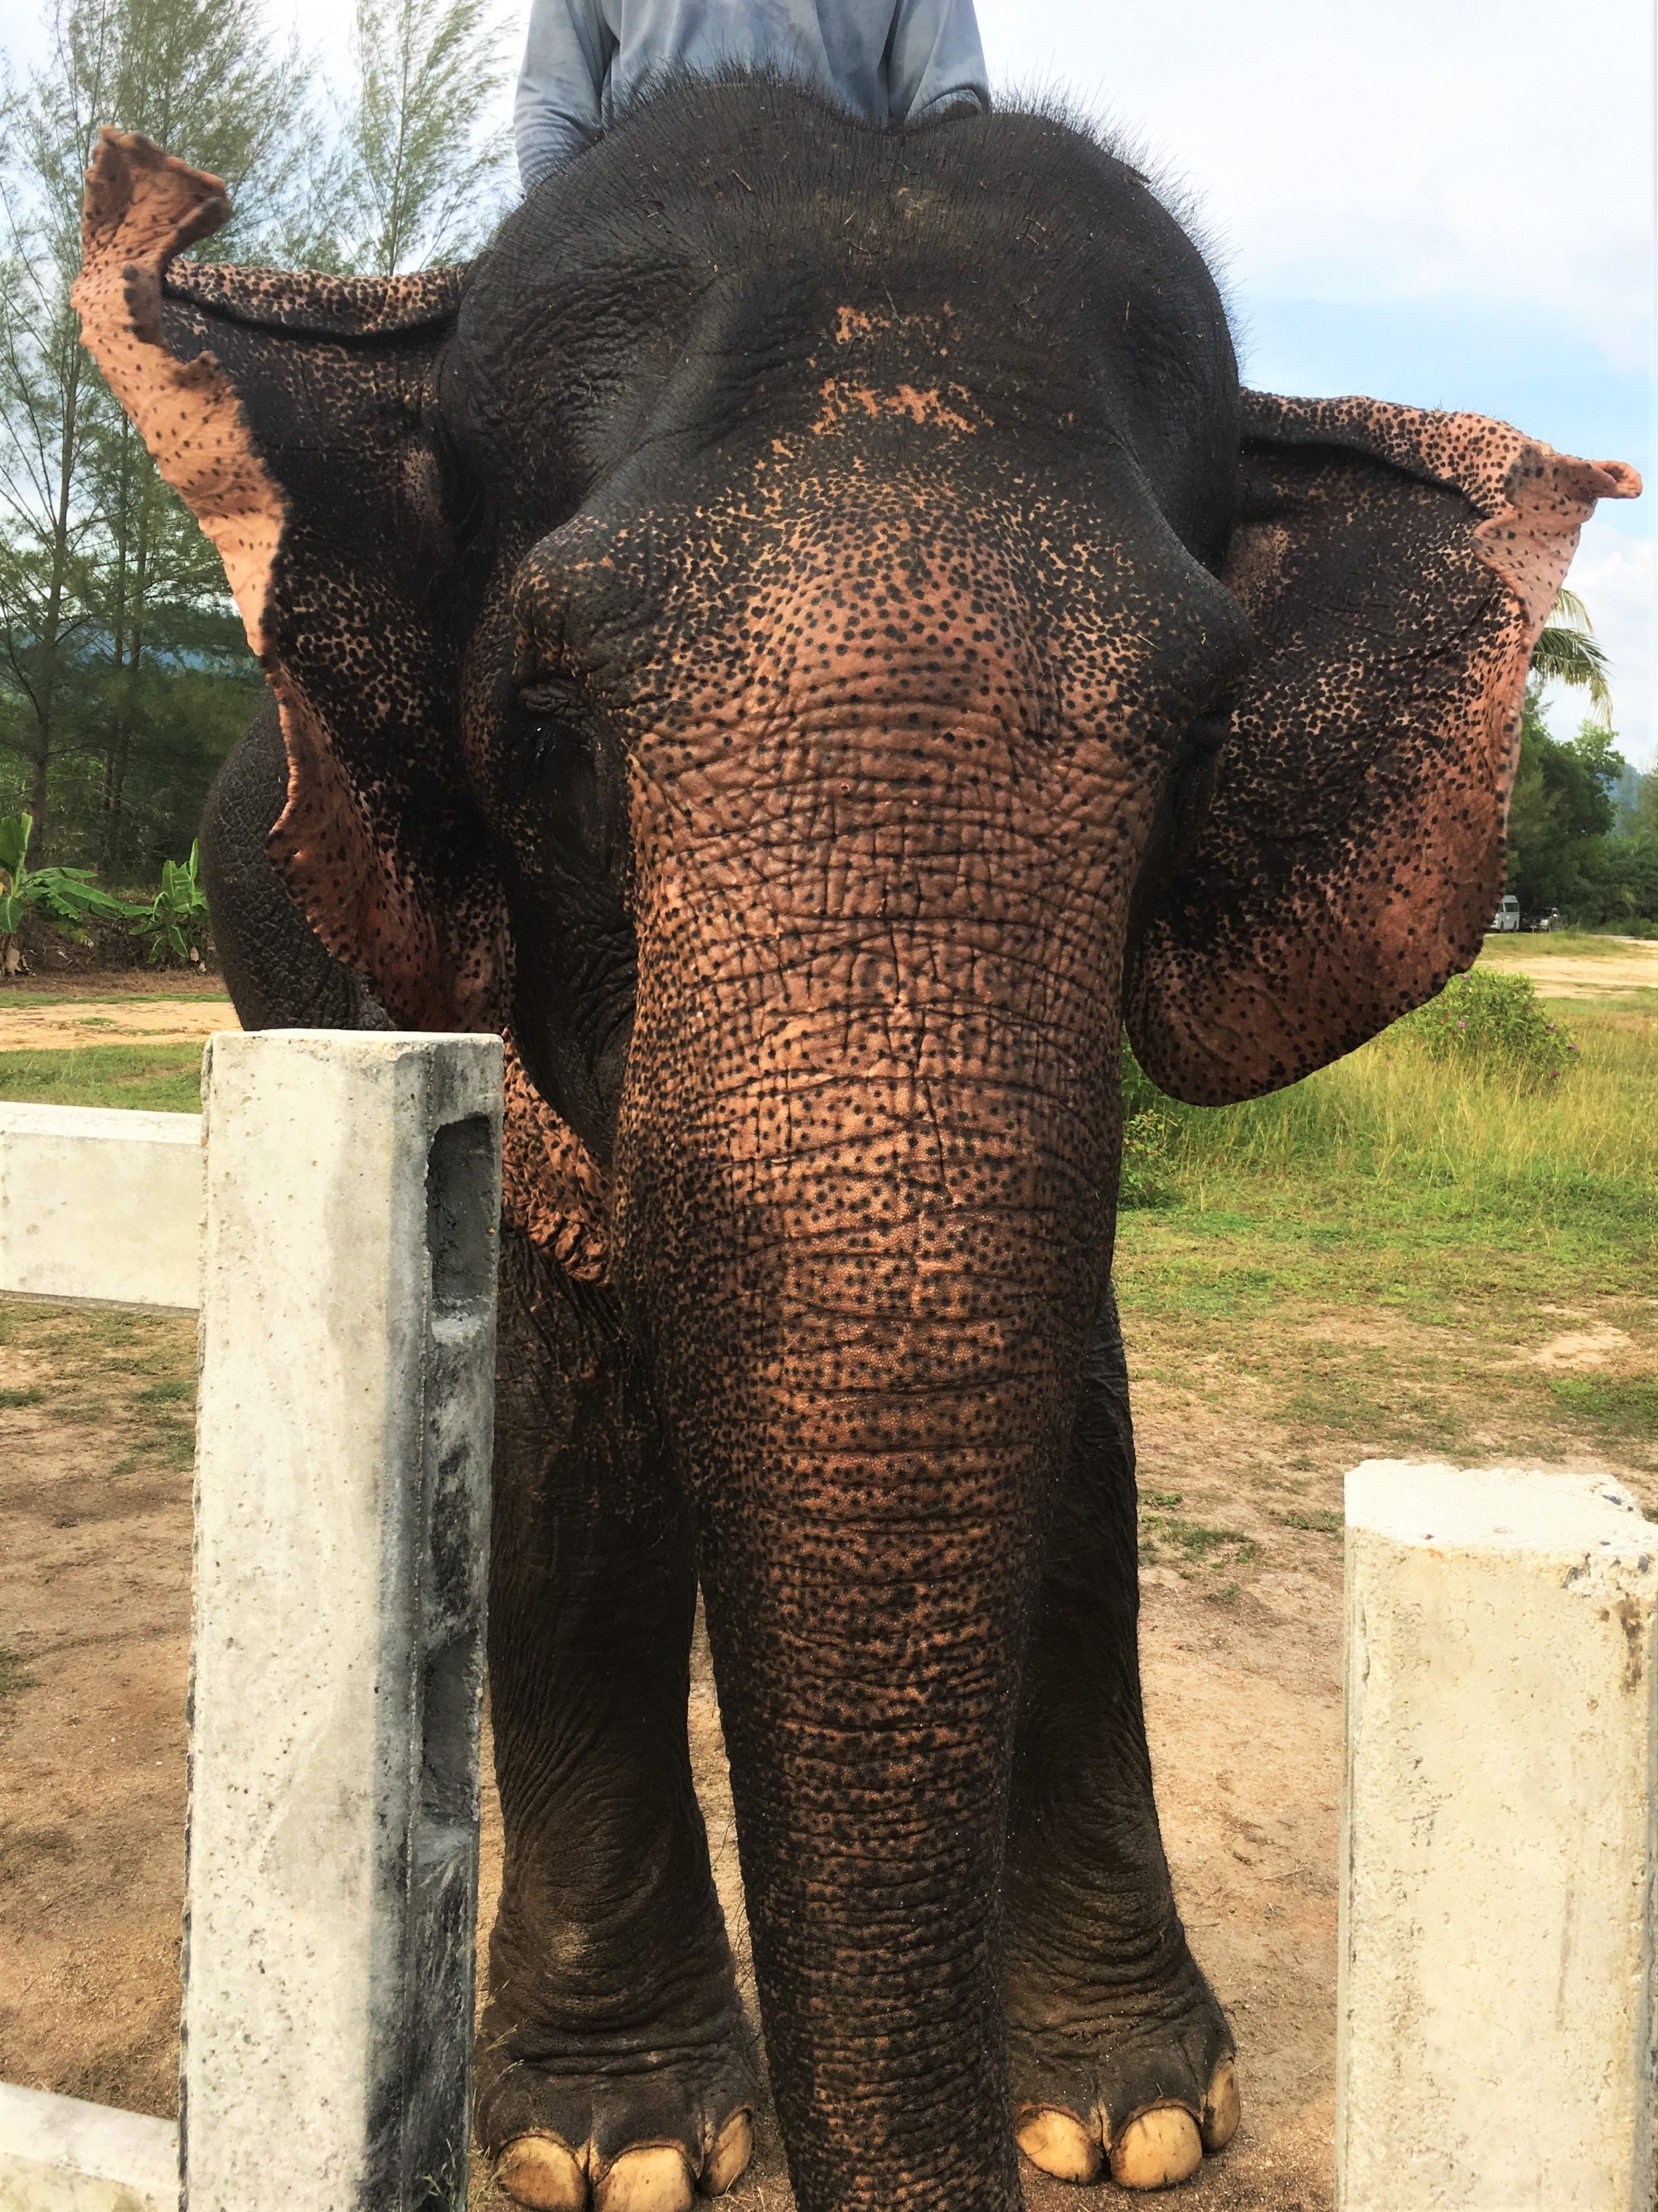 The Seaside Retreat Elephants, Khao Lak, Thailand